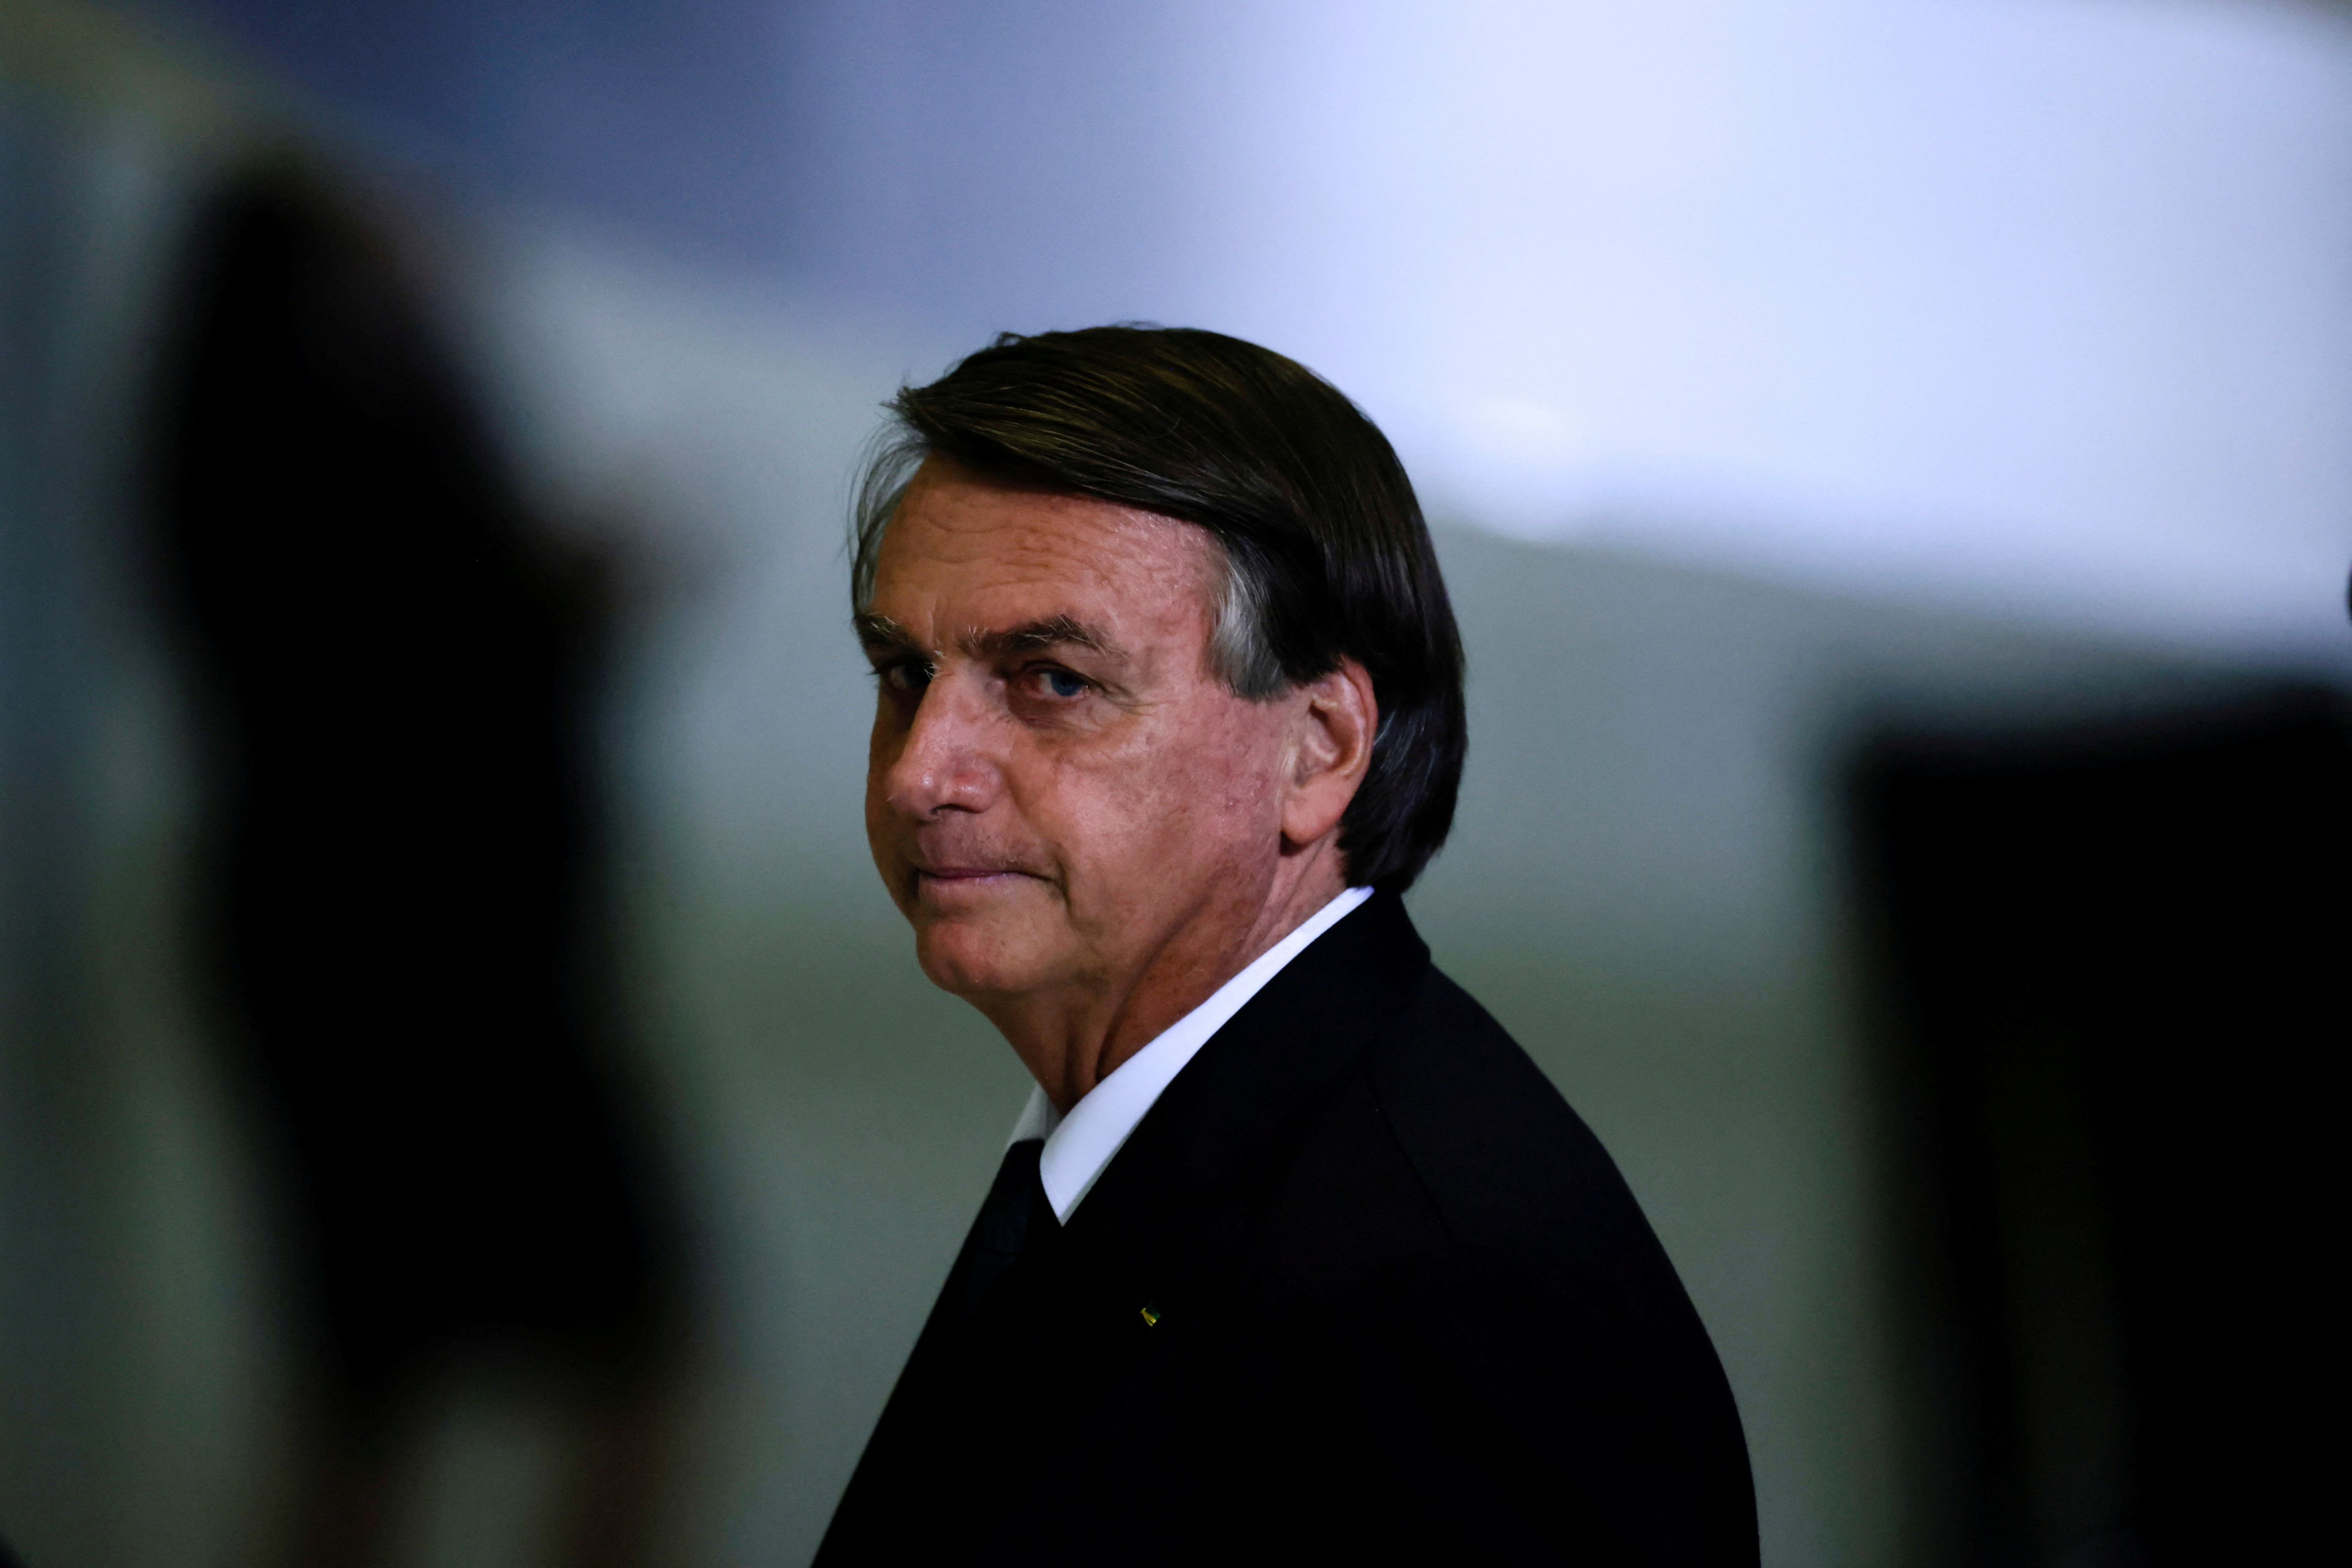 Según Transparencia Internacional, el ex presidente Jair Bolsonaro recurrió a “maniobras corruptas” para beneficiar a aliados políticos. (REUTERS/Ueslei Marcelino)